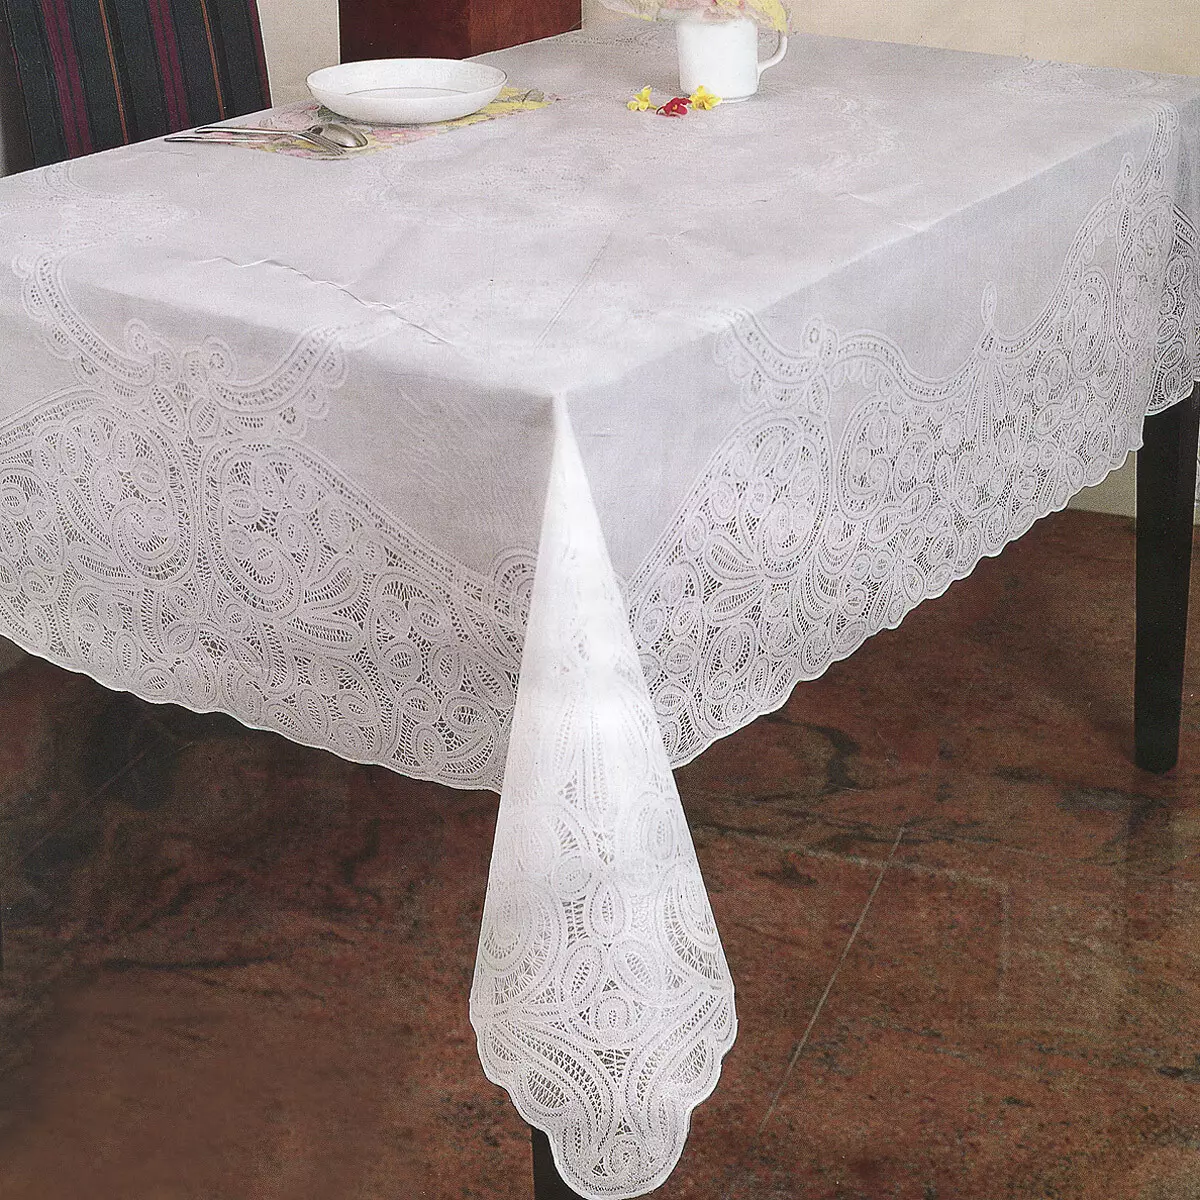 Estovalles de PVC: transparent per a taula i calat, rodó i oval. Què és això? Selecció de estovalles amb revestiment de polietilè sobre base de teixits 21596_25